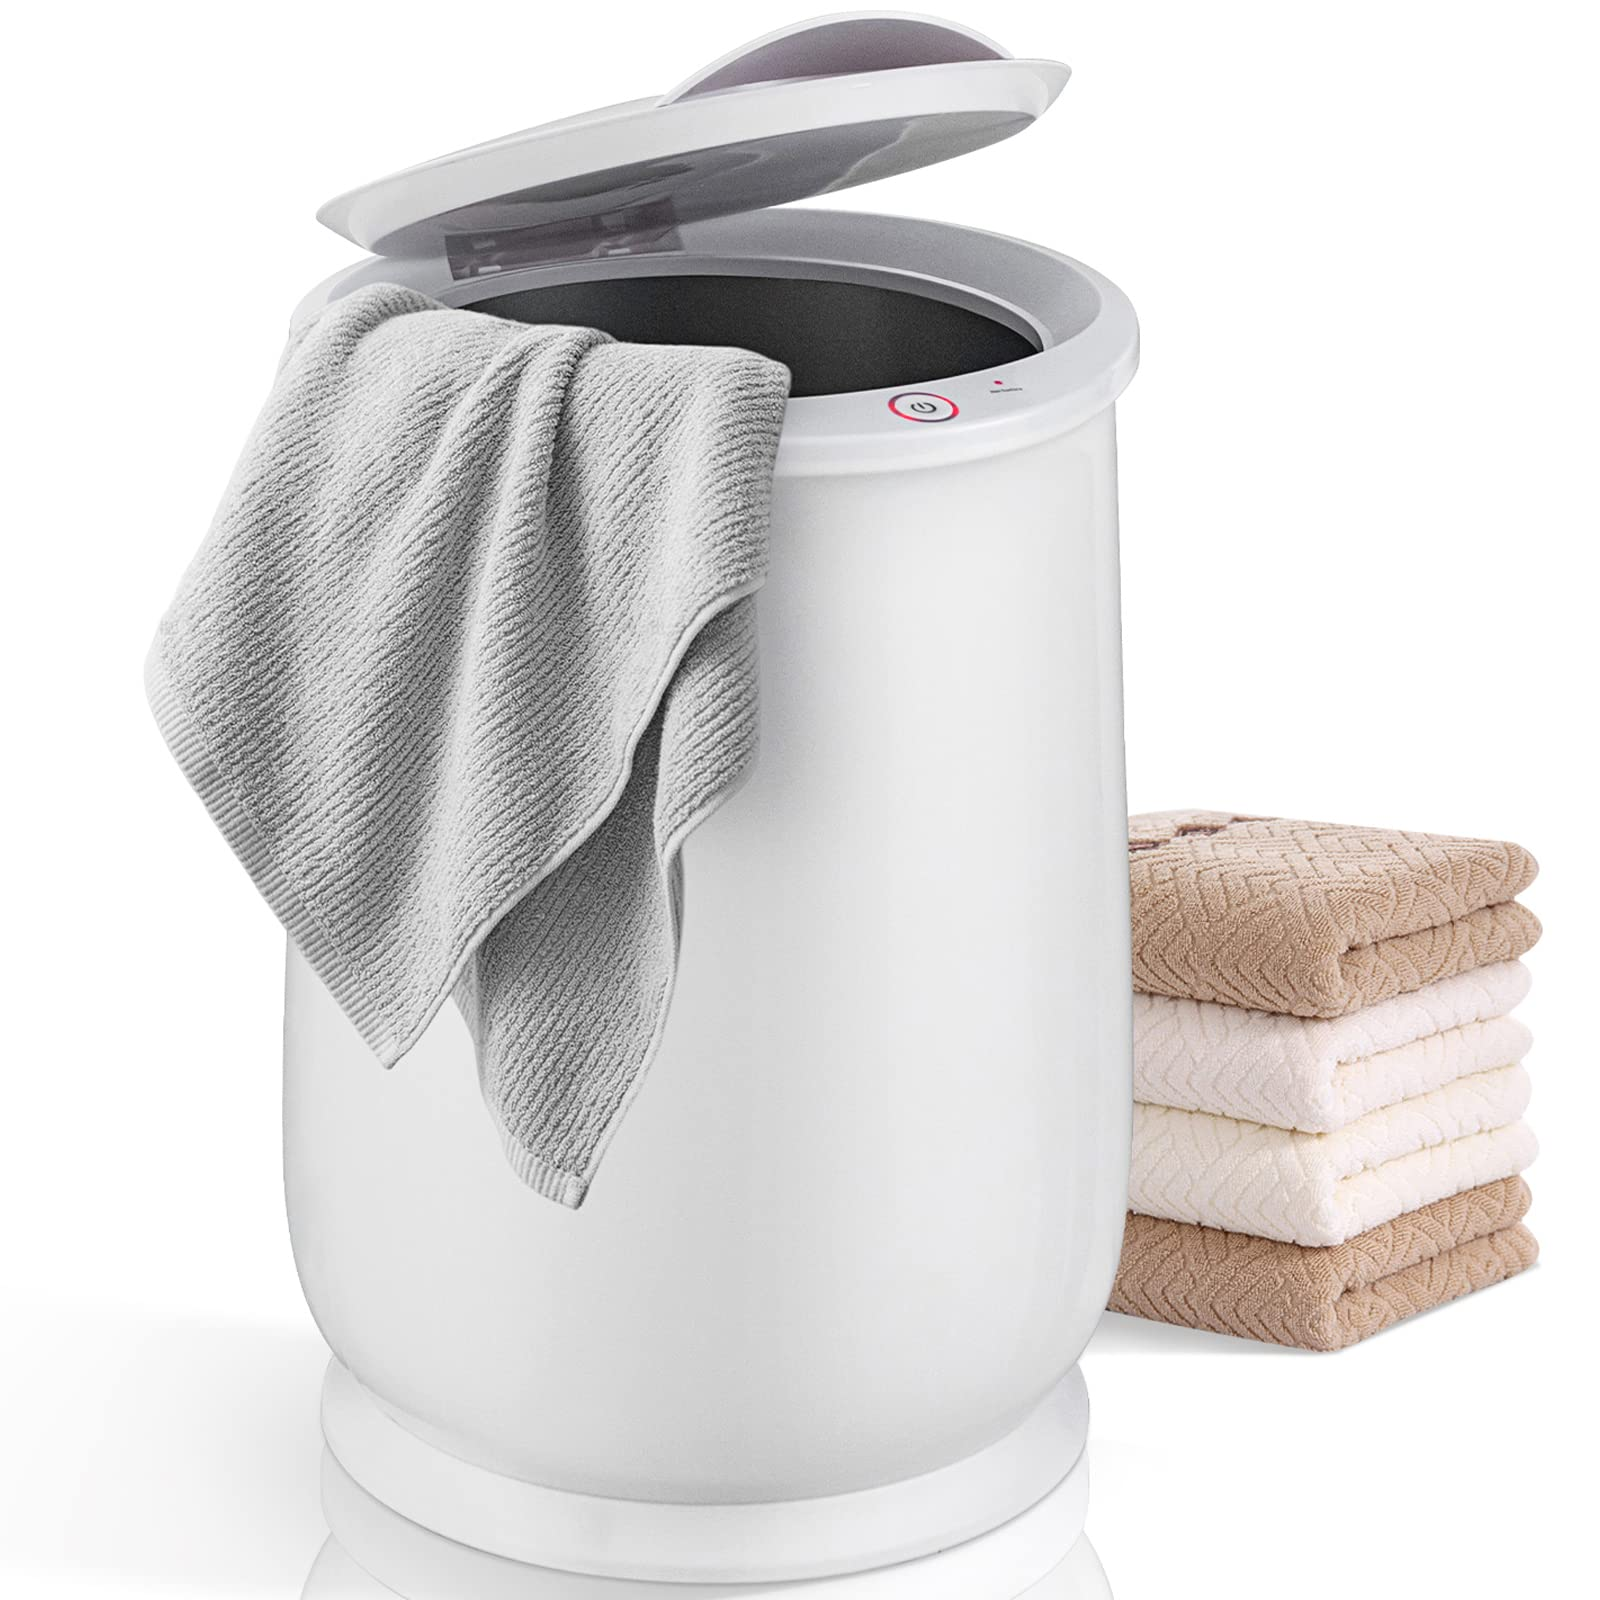 Giantex Towel Warmer Bucket for Bathroom